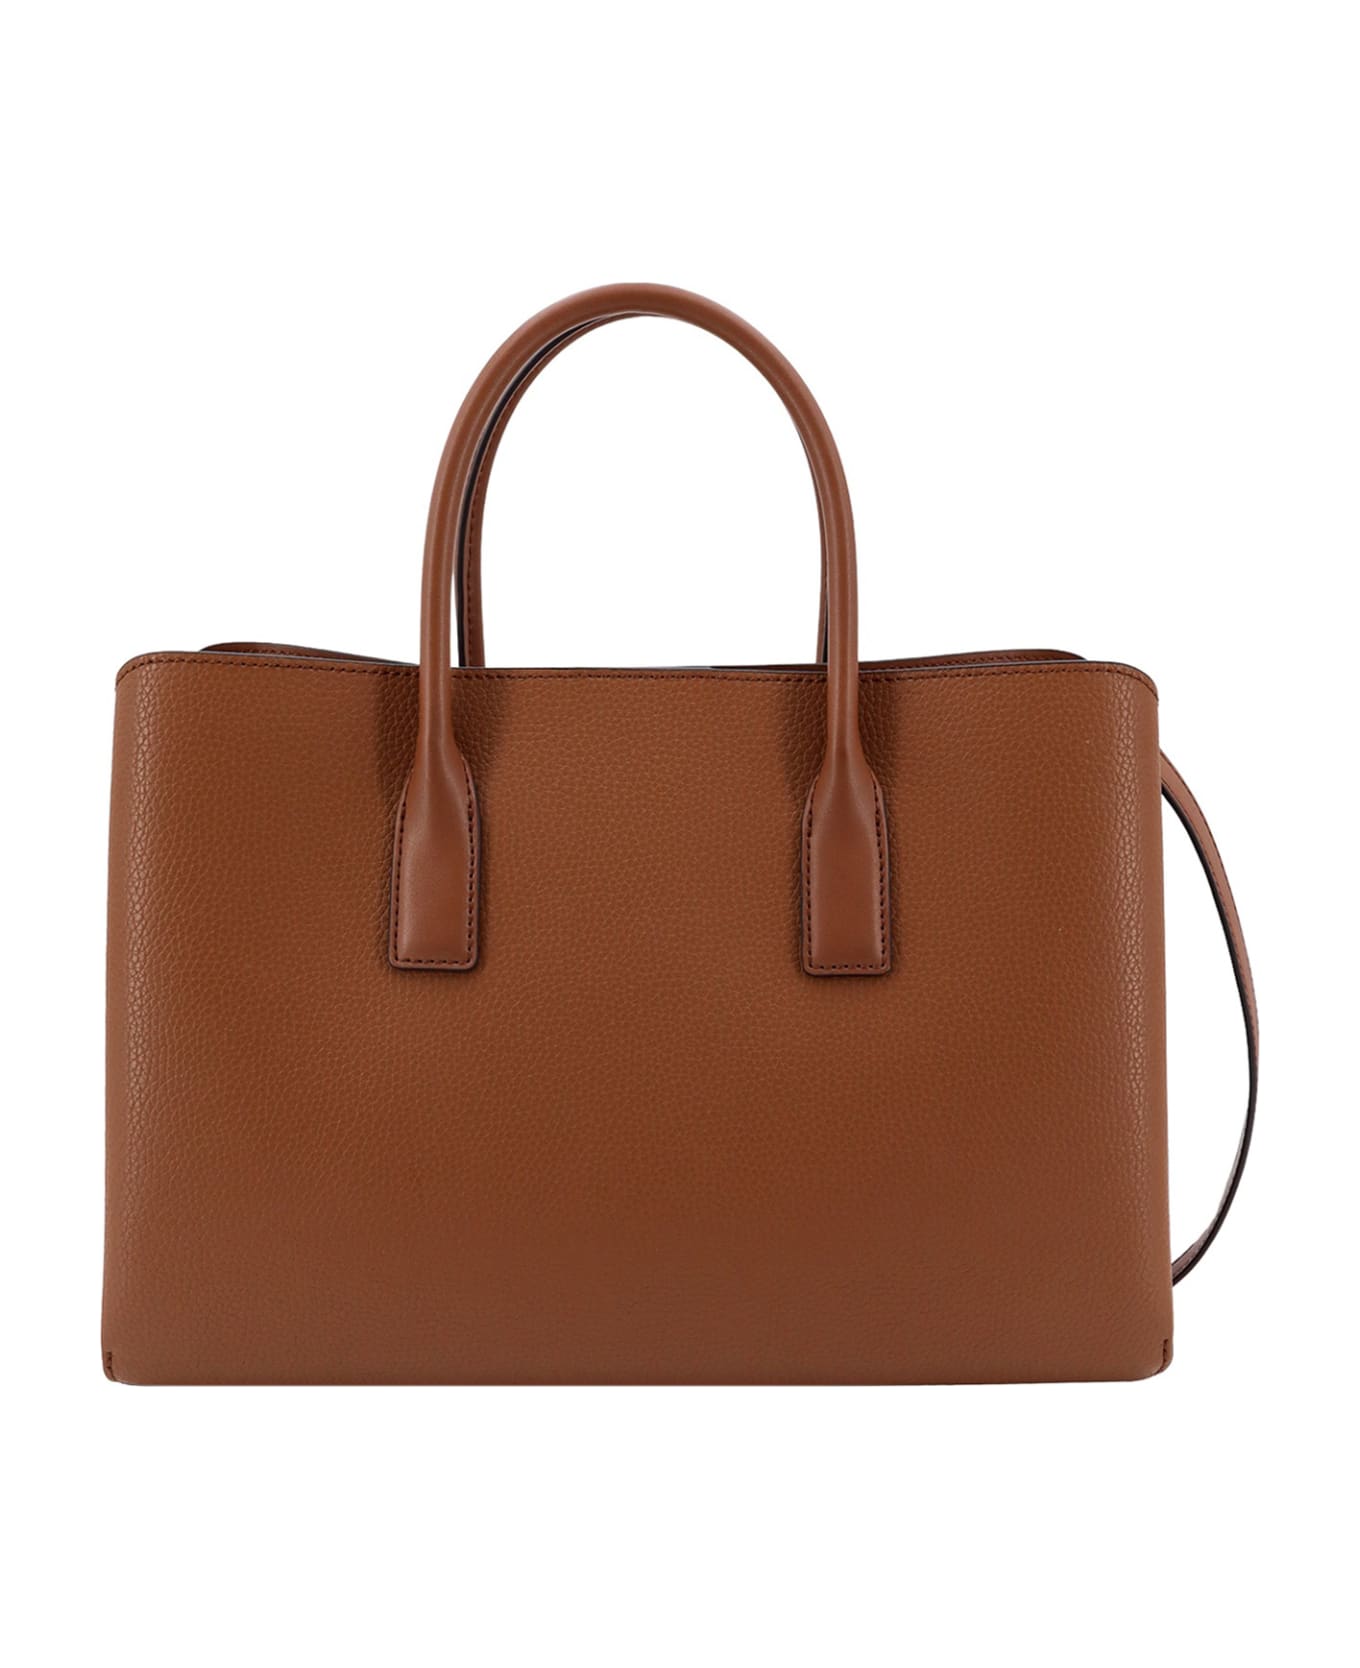 Michael Kors Collection Handbag - Luggage